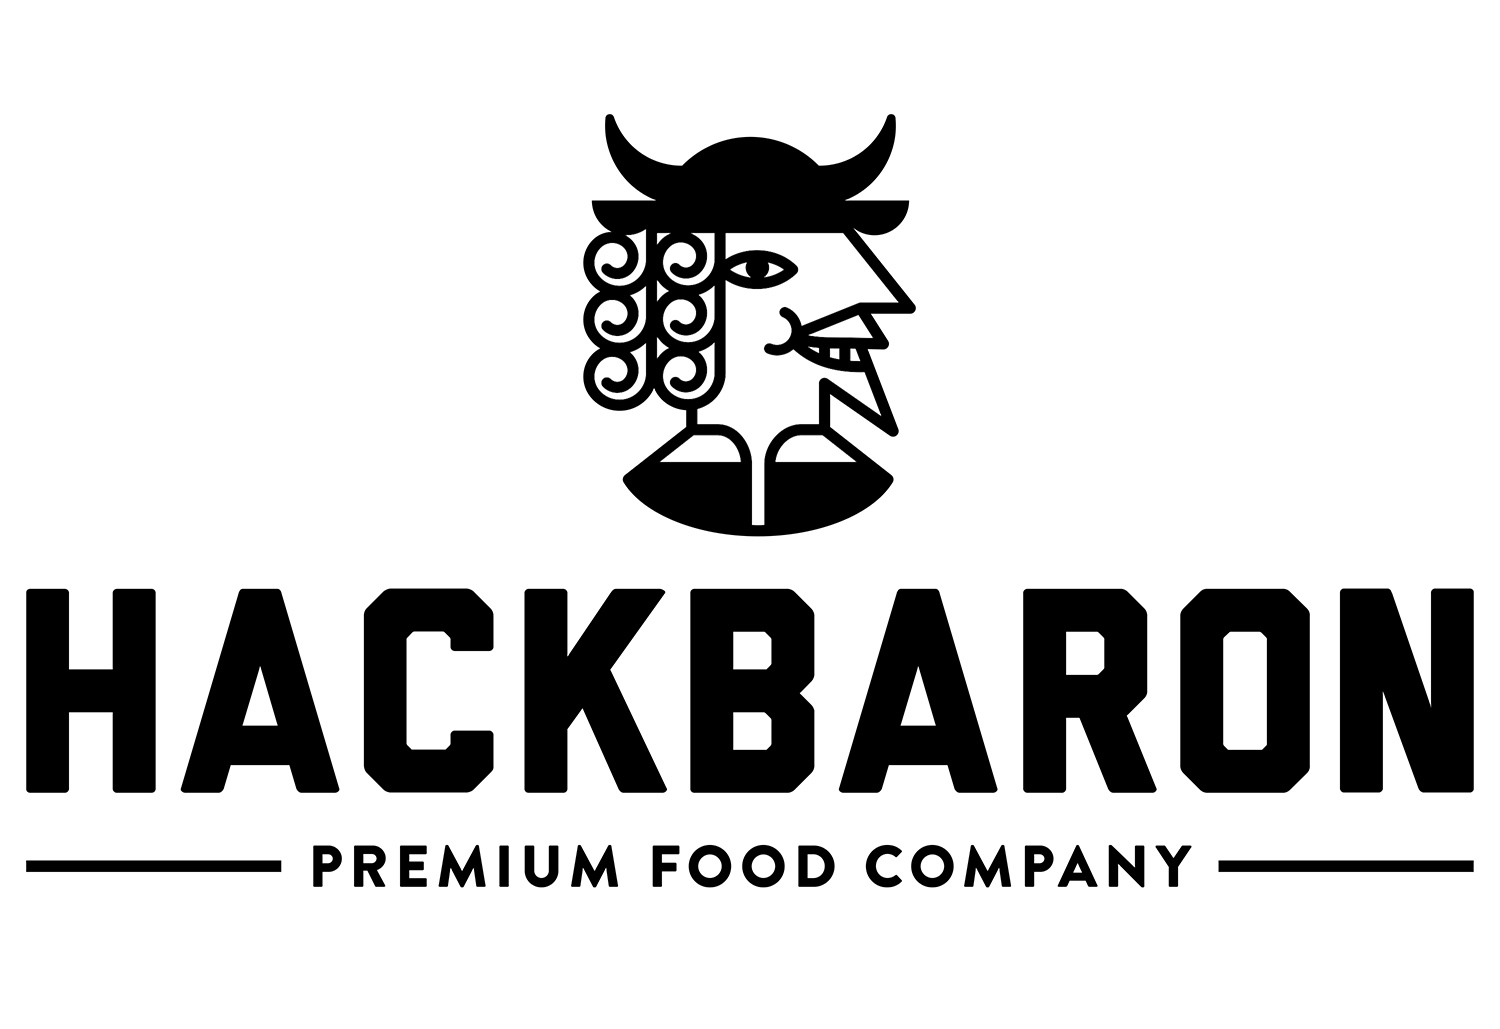 Hackbaron. Premium Food Company. 1